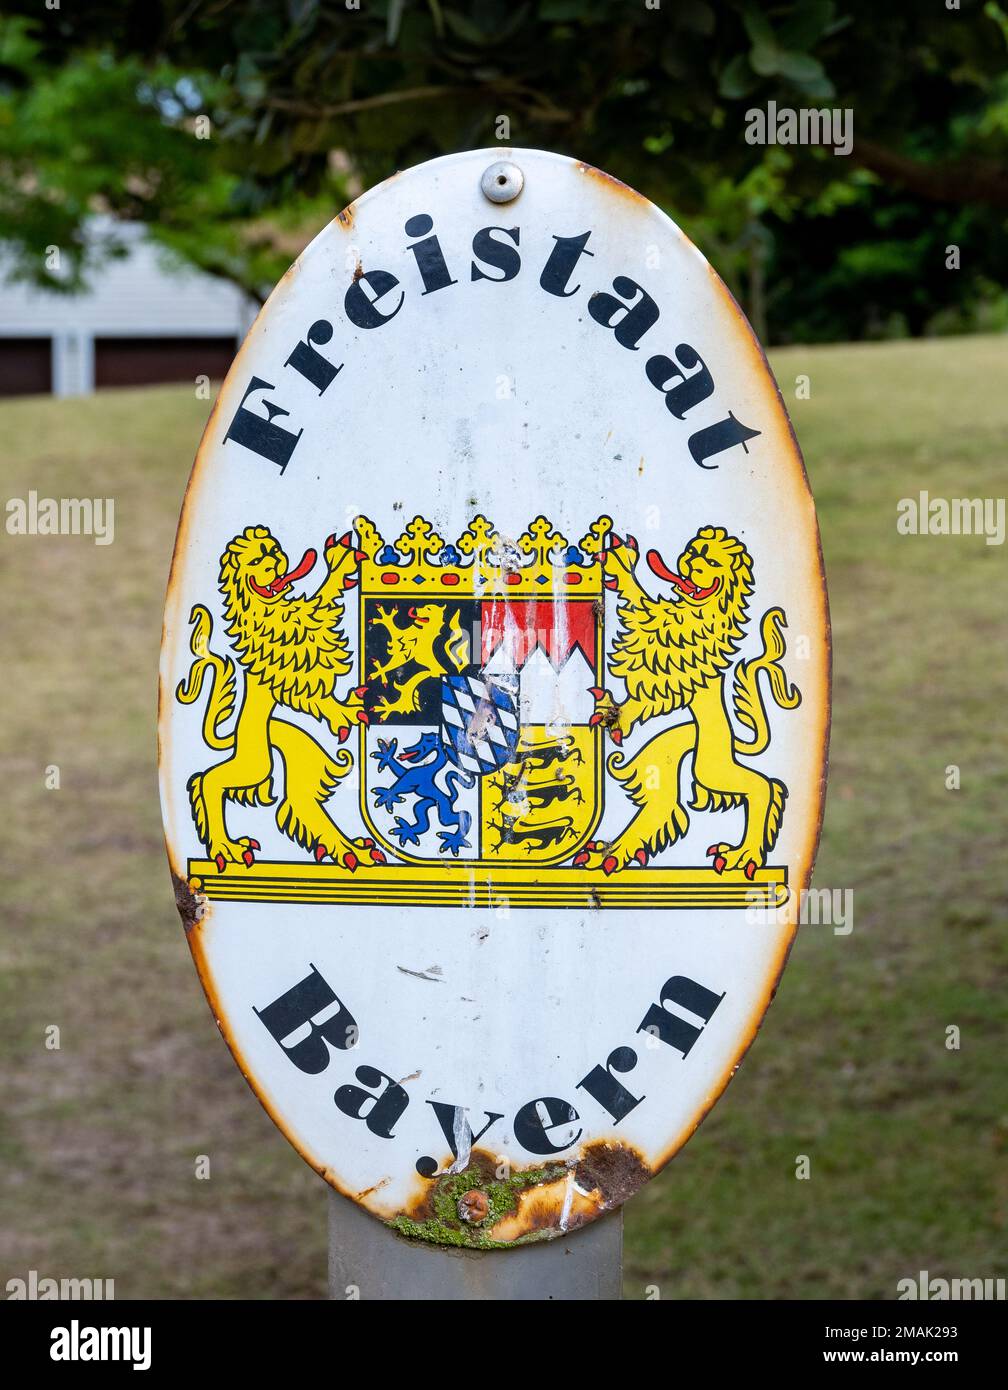 Emblem des Freistaates Bayern oder Freistaat Bayern in deutscher Sprache mit seinem Wappen. Westkap, Südafrika. Stockfoto